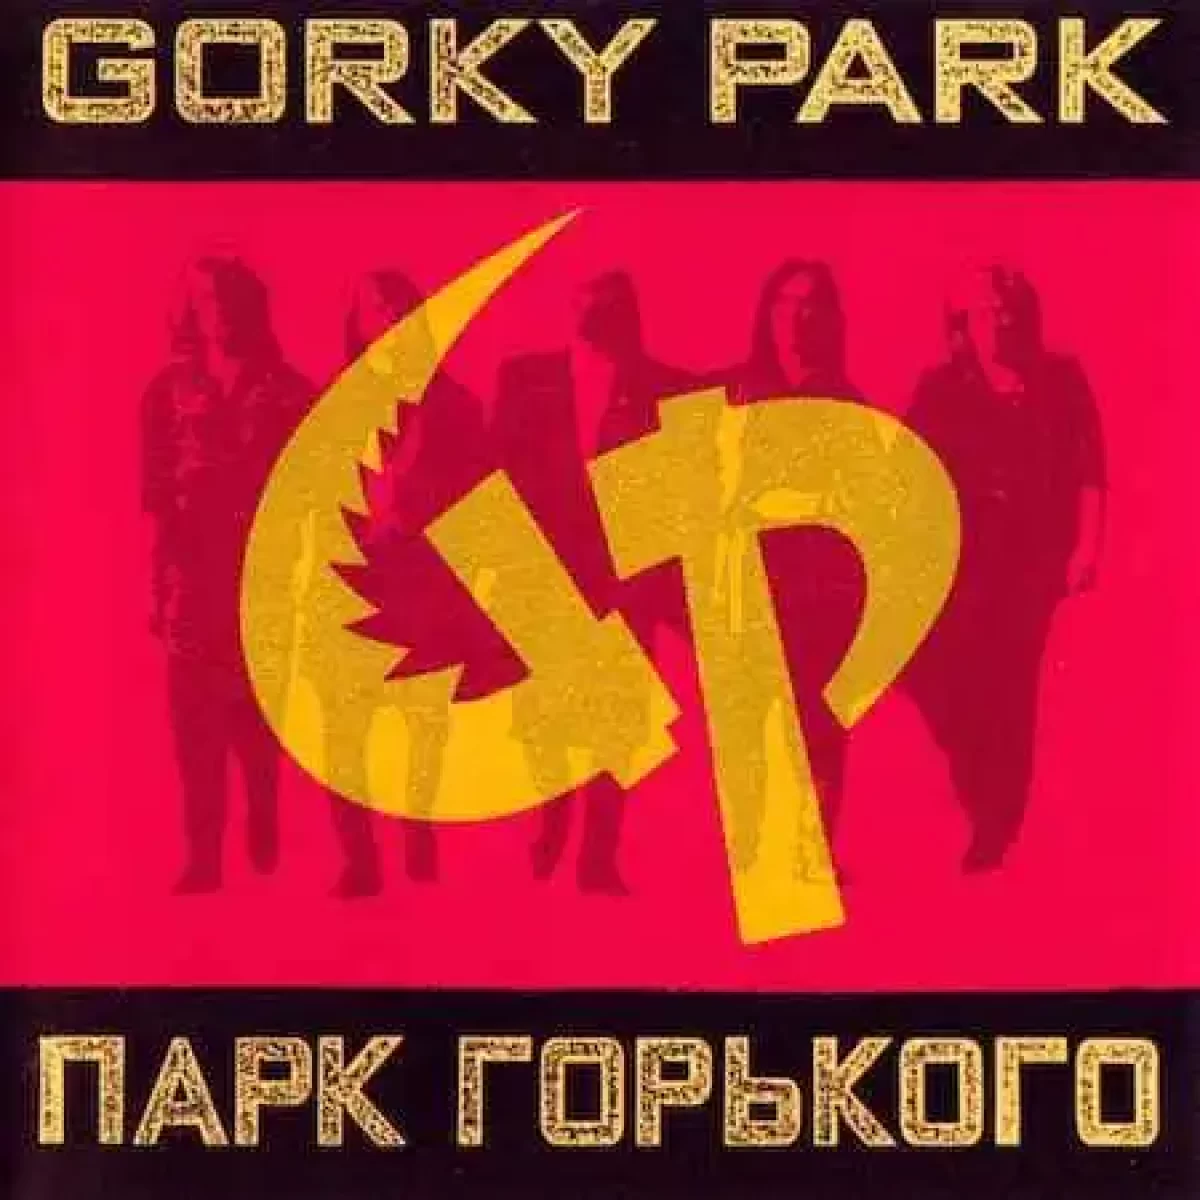 Парк горького stranger. Gorky Park stare. Горький парк mp3 collection CD. Gorky Park Moscow calling. Moscow calling рингтон.